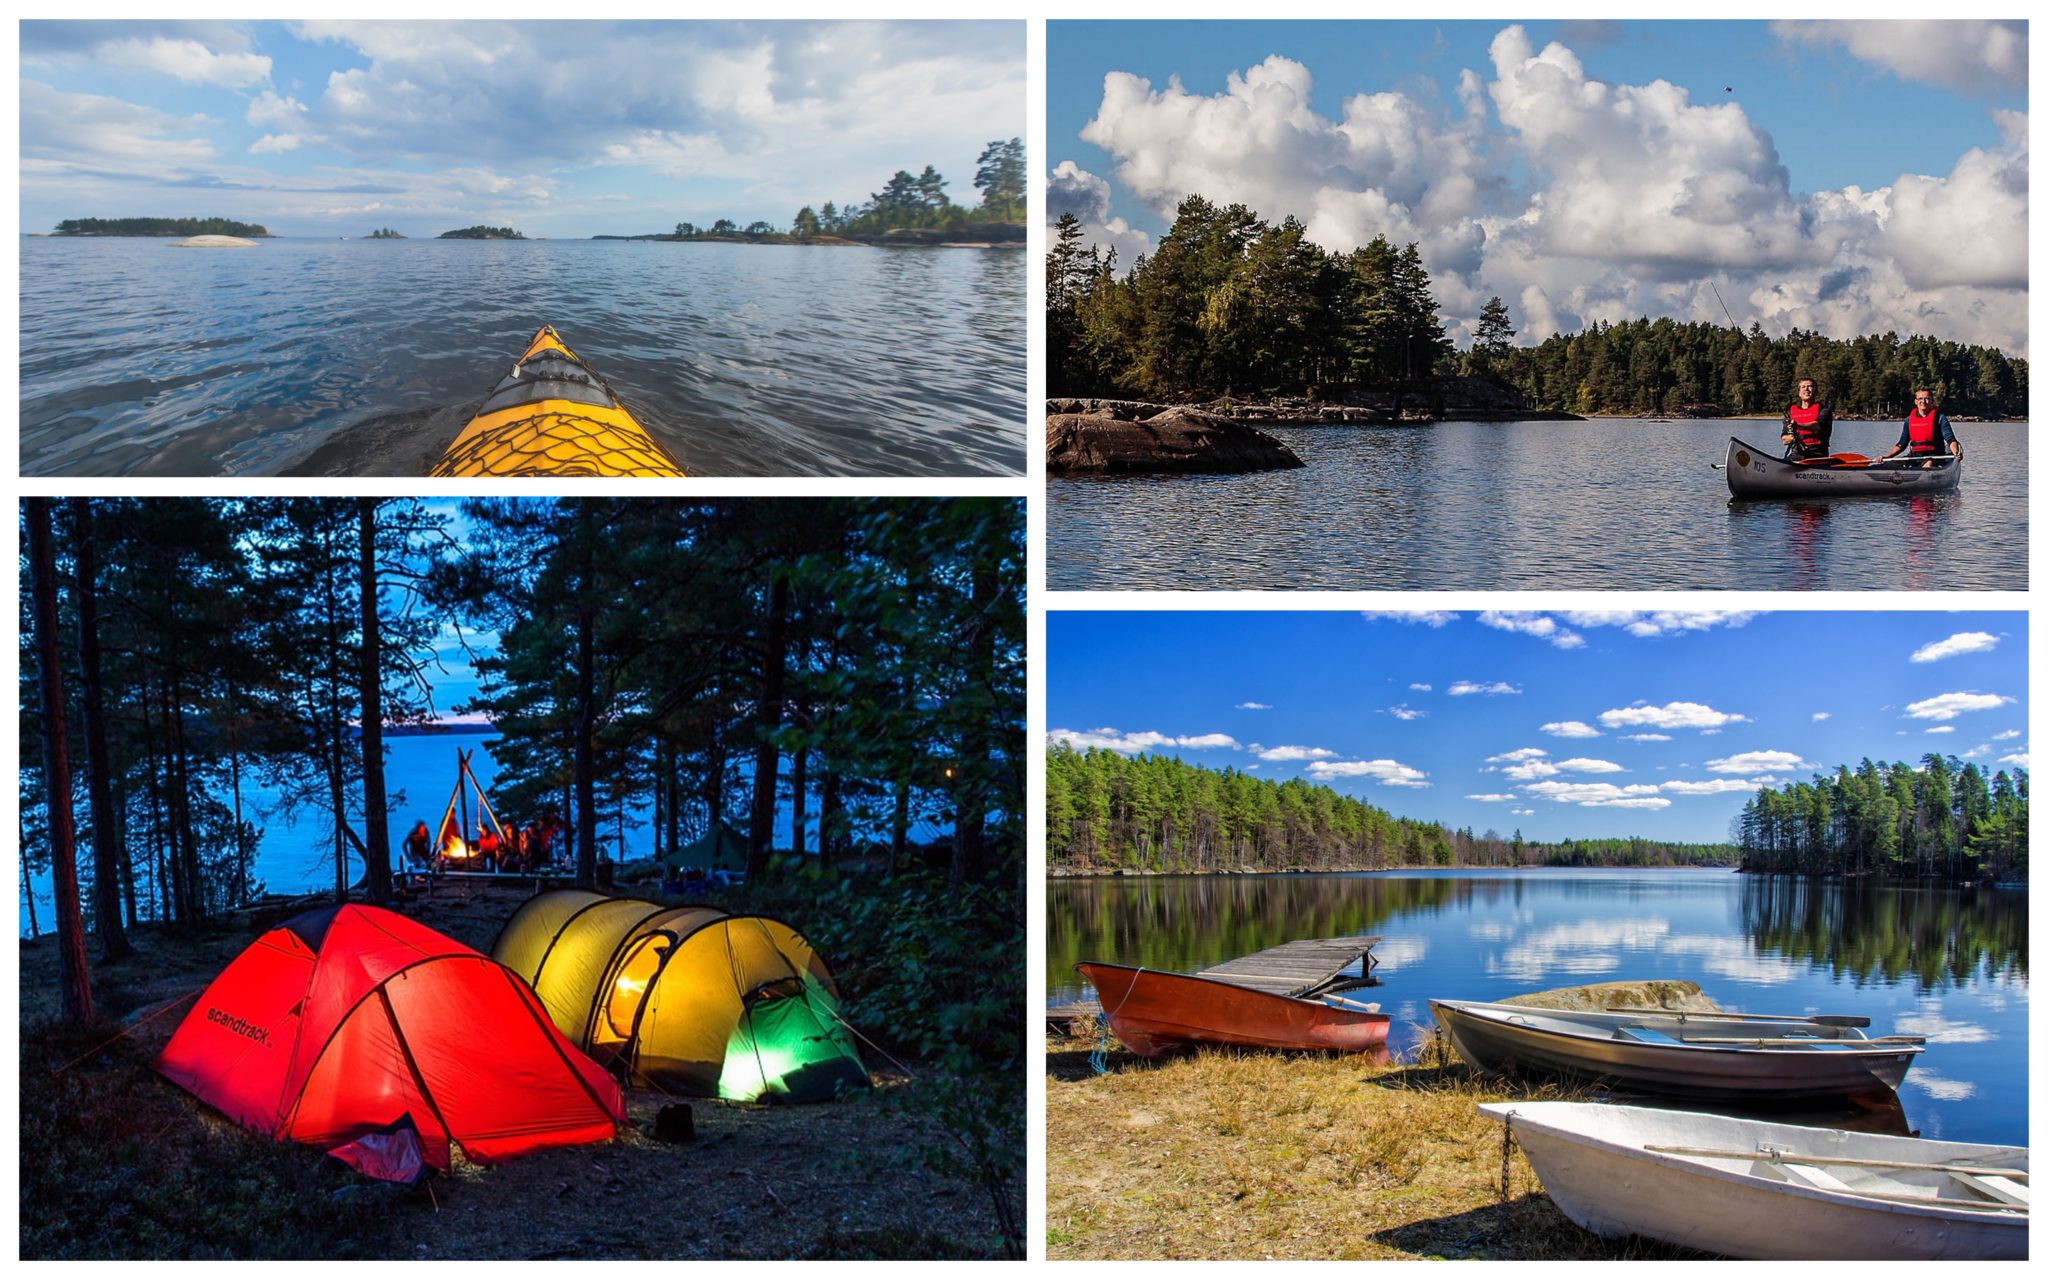 Kanutour in Schweden 9 Tage inklusive Busfahrt, Übernachtung im Zelt, Kanu & Extras für 299€